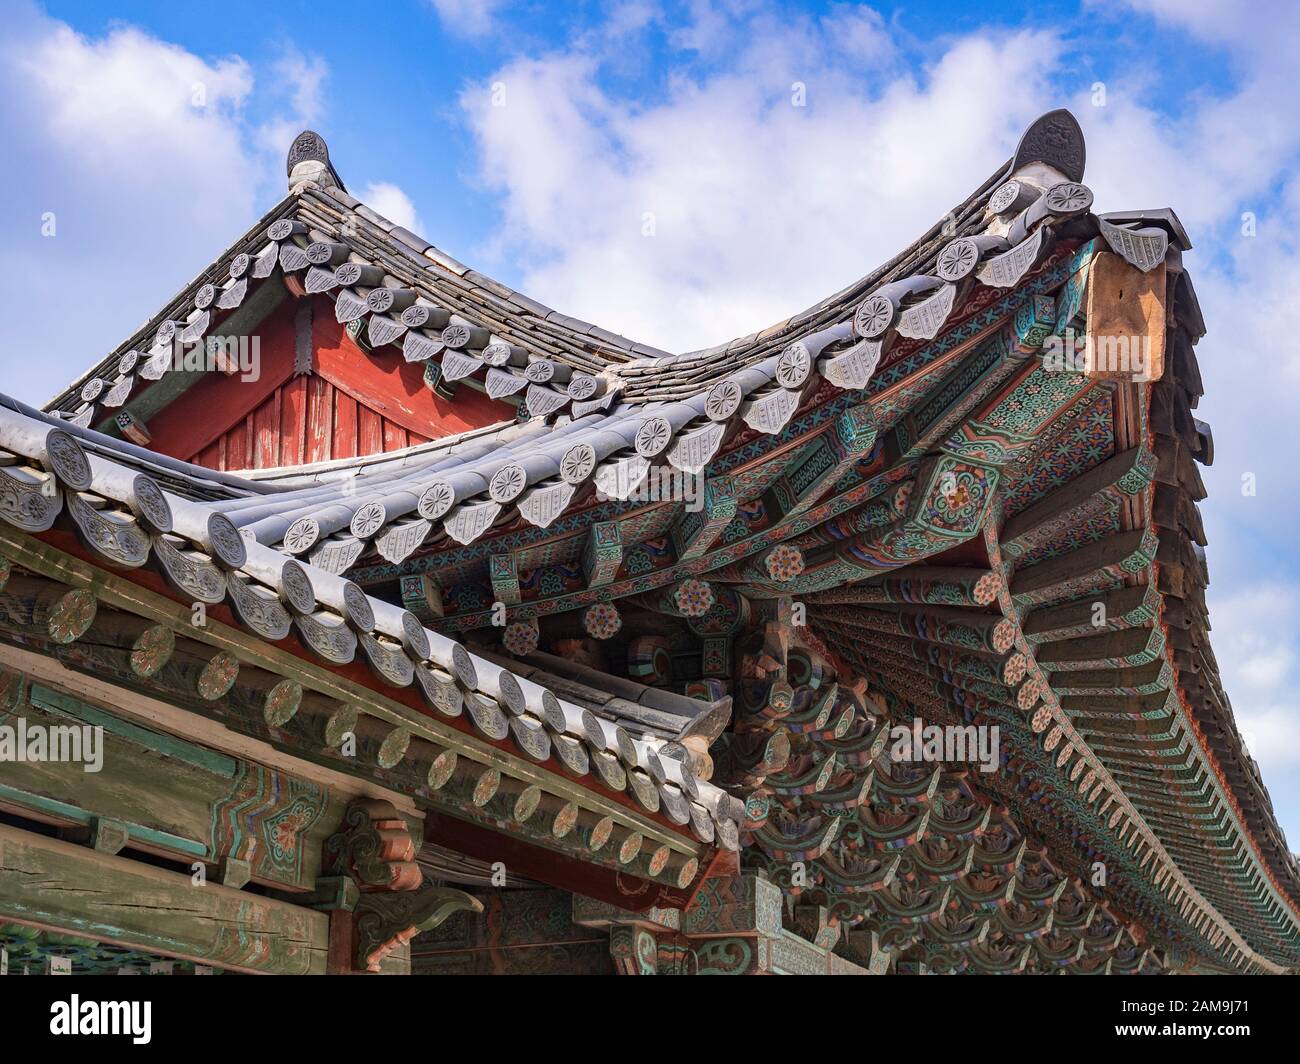 31 marzo 2019: Gyeong-Ju, Corea del Sud - Dettaglio del tetto al tempio buddista di Bulguksa, Gyeong-Ju, un sito patrimonio dell'umanità dell'UNESCO. Foto Stock